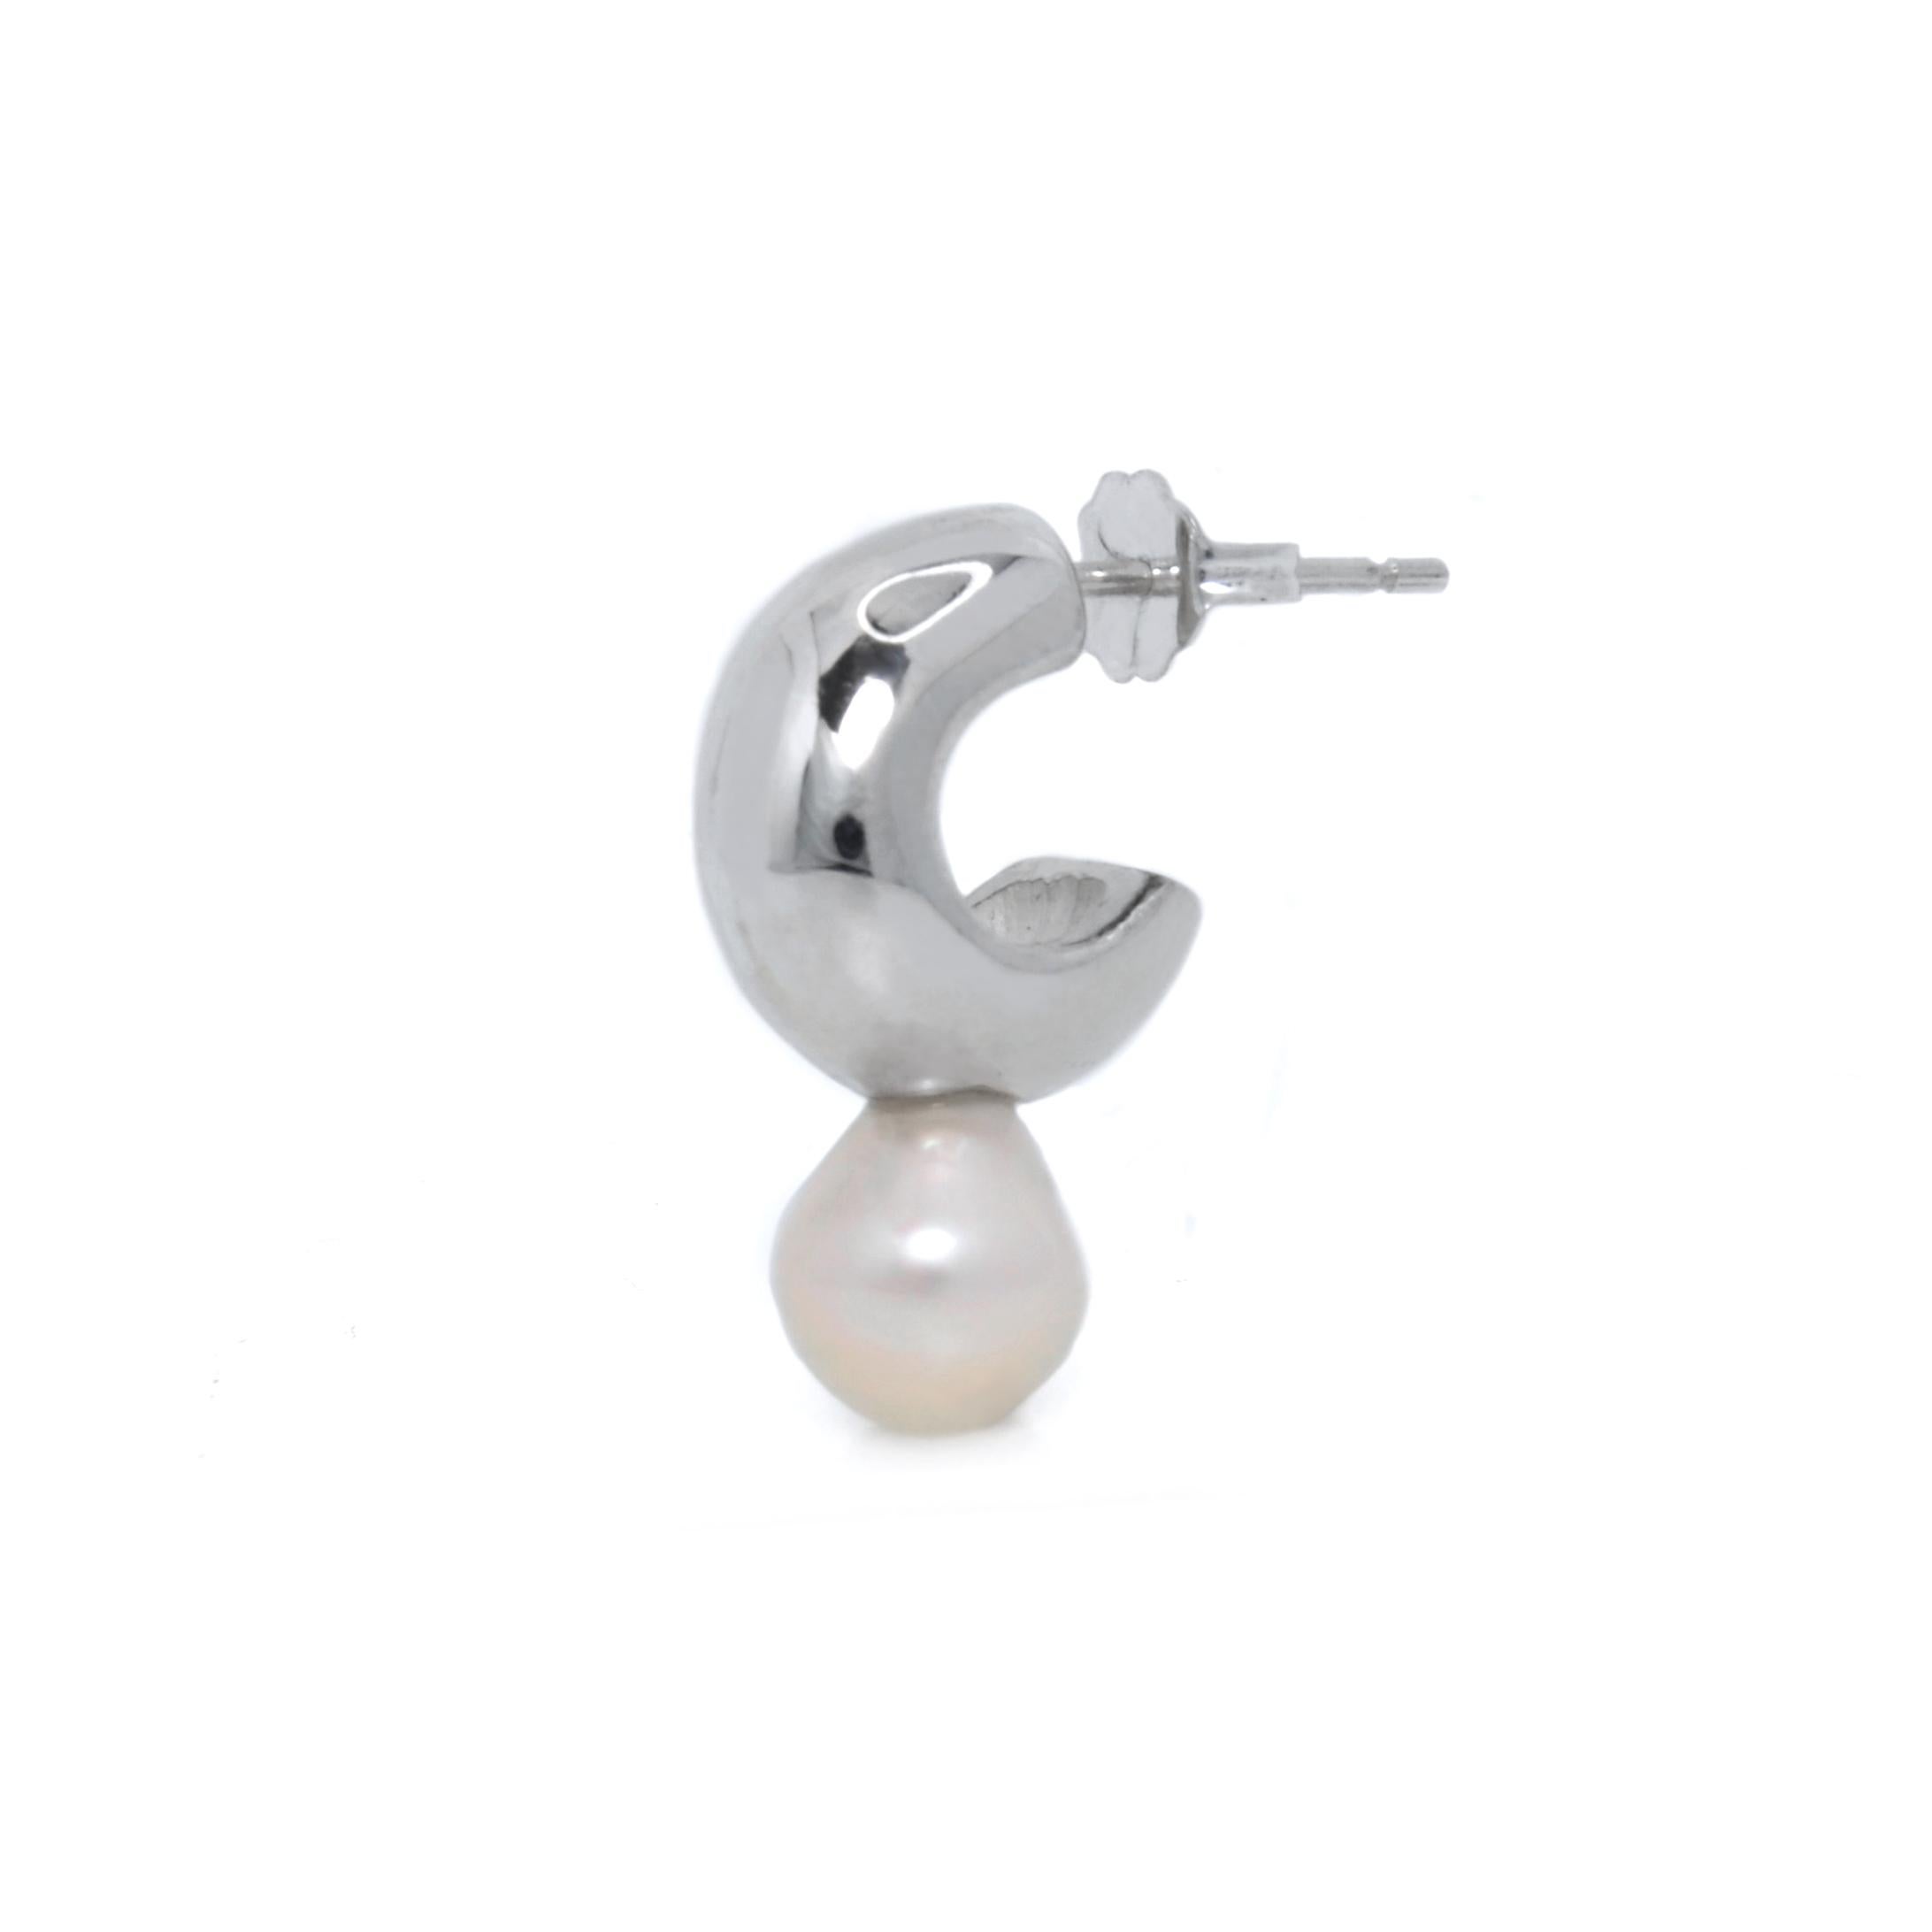 Die Melu Huggies, Süßwasserperlen-Ohrringe mit tropfenförmigen Perlen in einem Design, das an die geheimnisvollen und mystischen Sirenen der Folklore erinnert.

In sorgfältiger Handarbeit aus Sterlingsilber gefertigt. Aufgrund ihres natürlichen